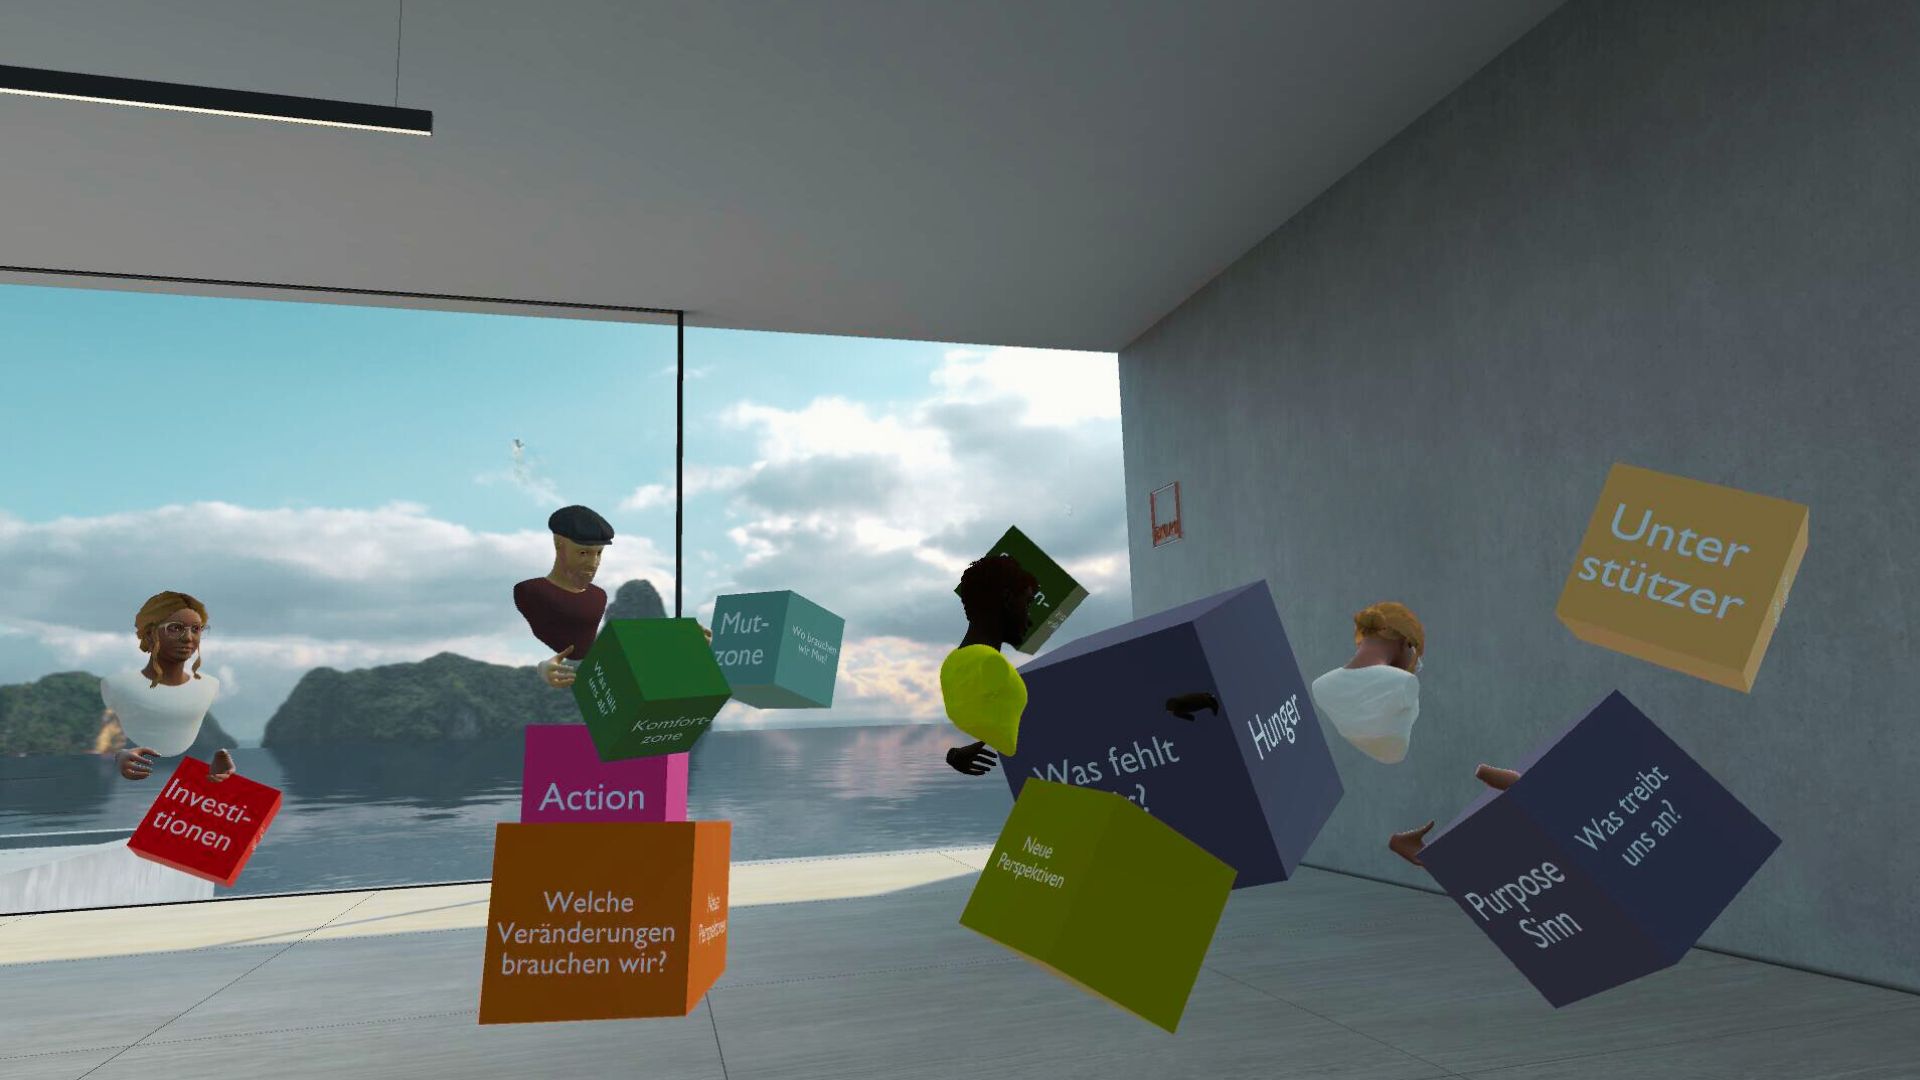 Virtual Reality Raum in dem verschiedene bunte Würfel bewegt werden und in ihrer Größe verändert werden. Ein Team erarbeitet hier ihre Vision für das Team mit der Methode Big Picture. Die Virtual Reality Kollaboration im Team wirkt lebendig und interaktiv.